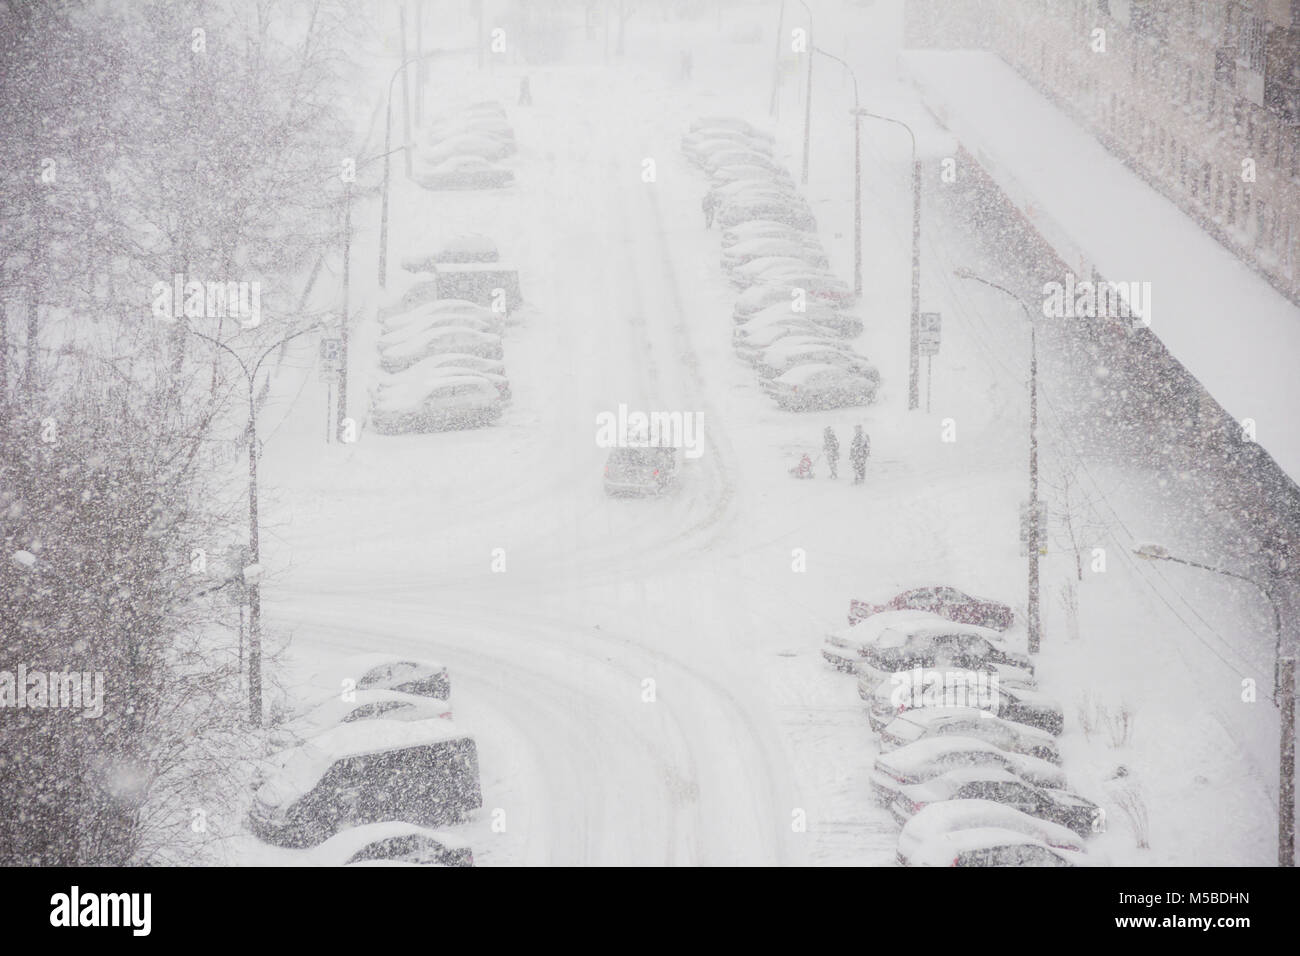 Panorama urbano de la ciudad en tiempo de invierno en la tormenta de nieve con algunas personas, snowcovered automóviles en una carretera, quitanieves, ambulancia Foto de stock